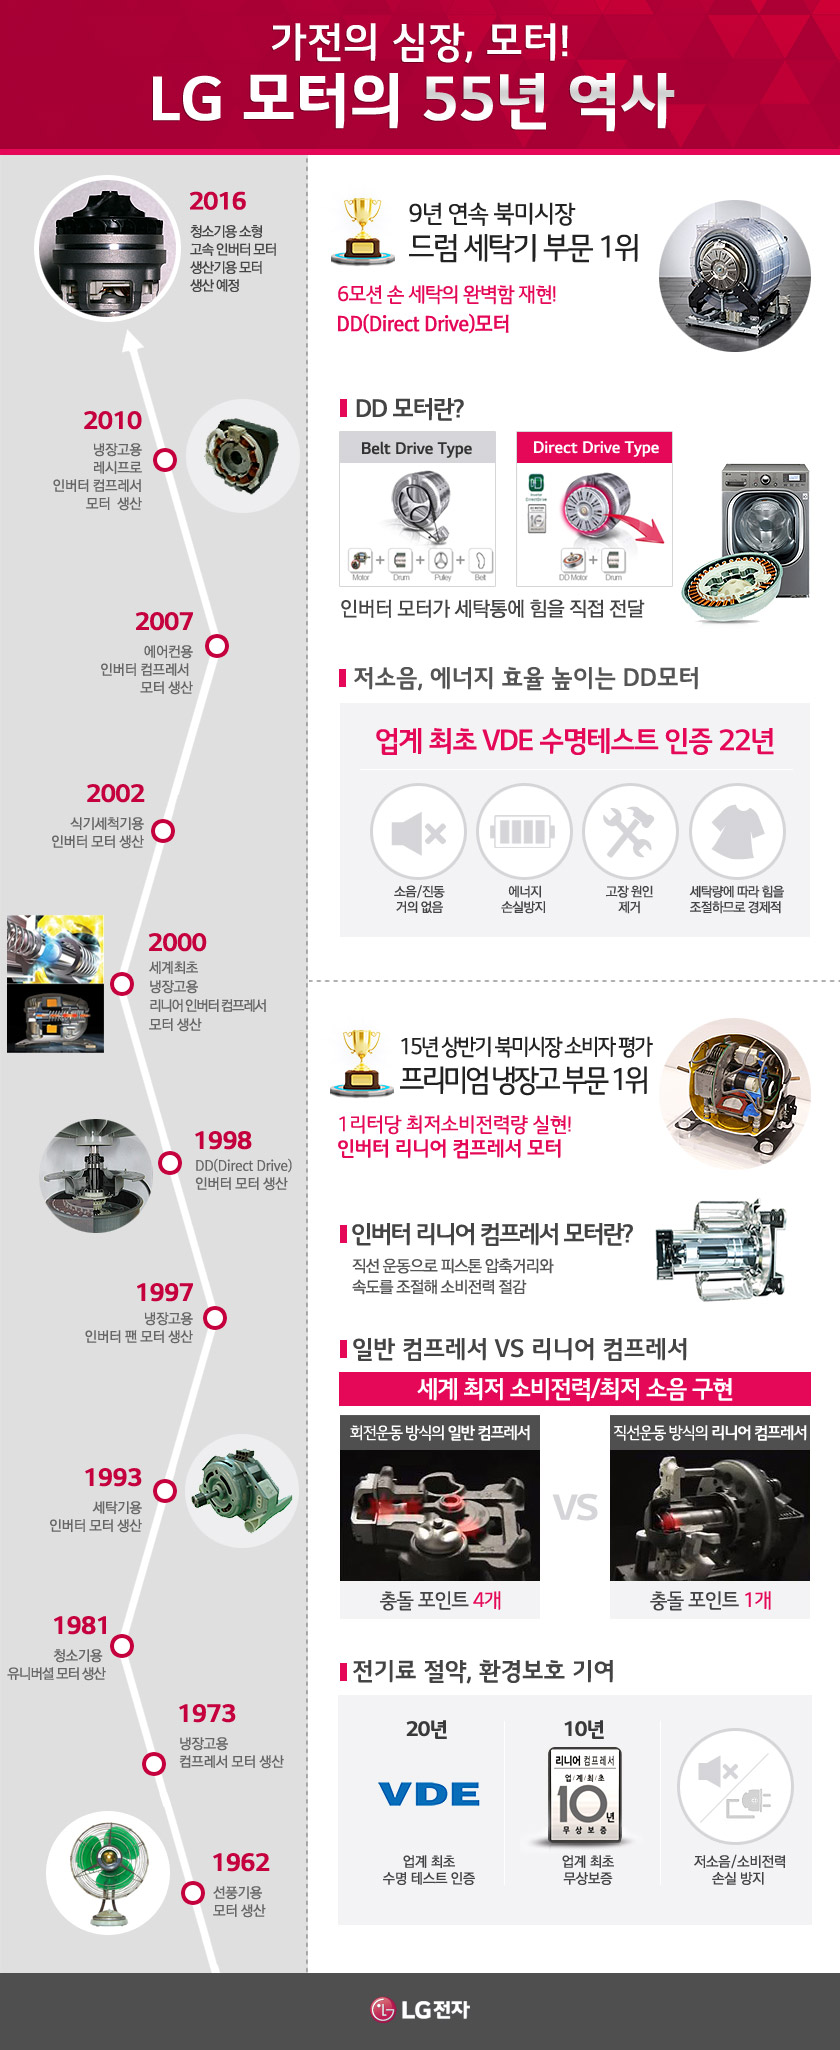 LG 모터 55년 역사 설명하는 인포그래픽 이미지